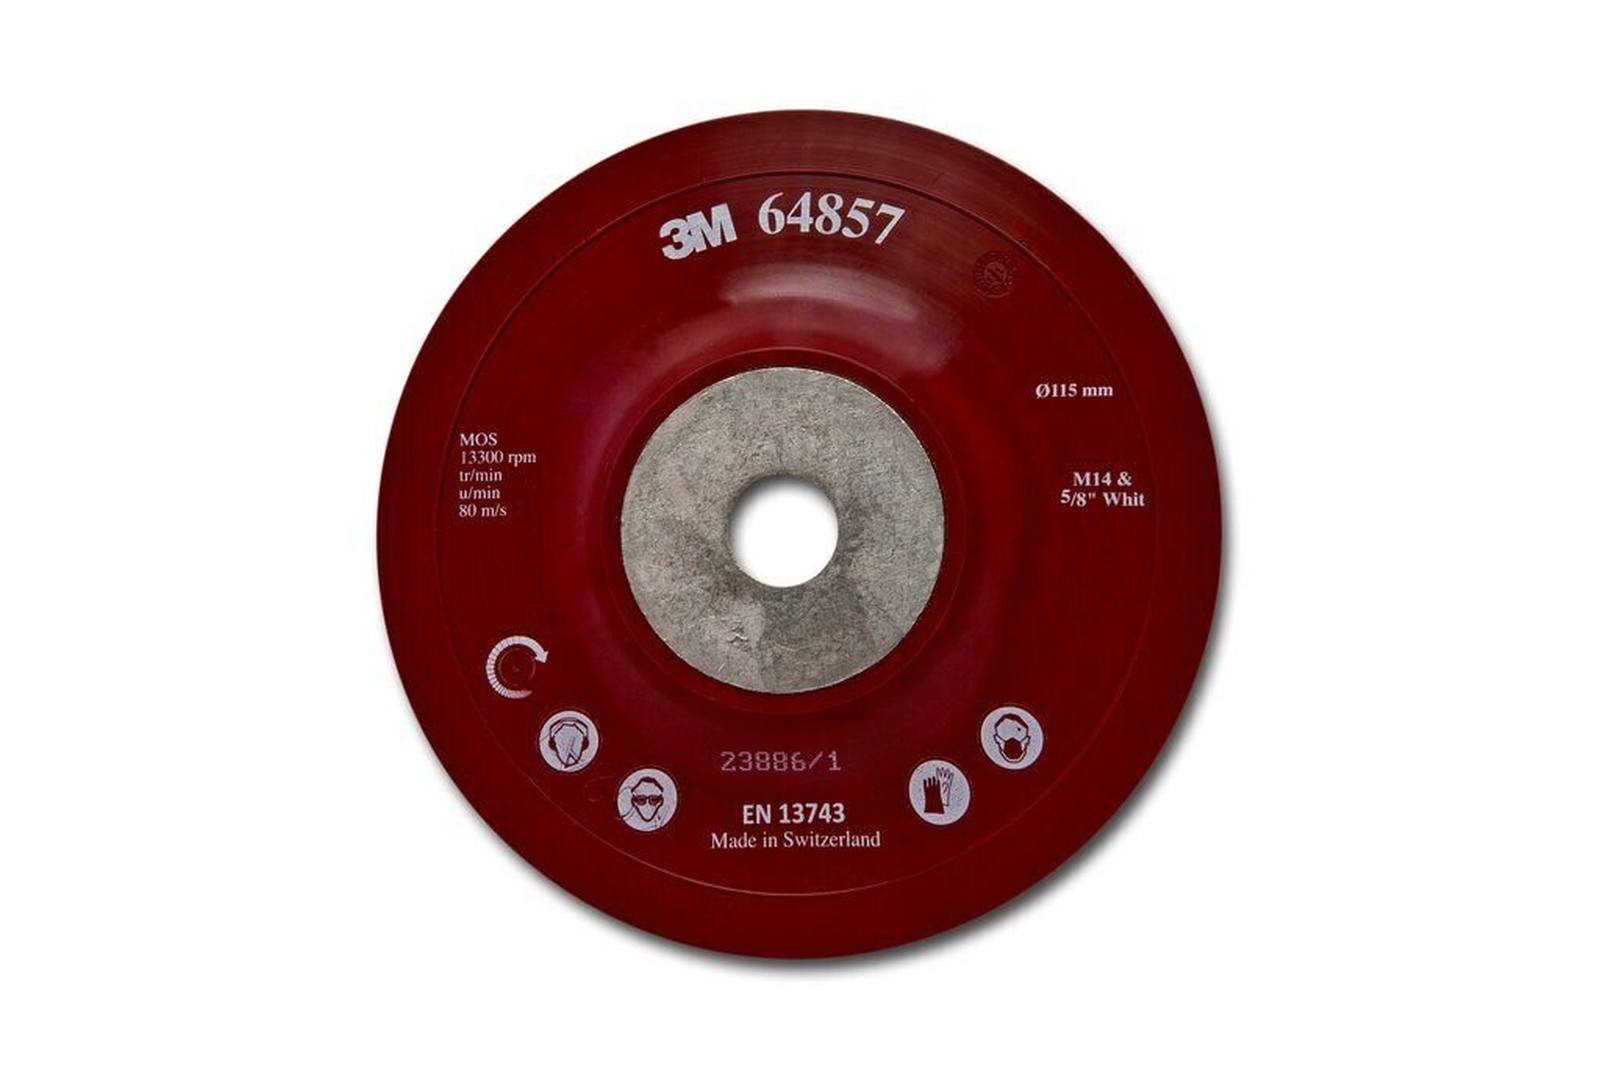 3M raskas taustatyyny, punainen, 125 mm, M14, tasainen, pehmeä #64858